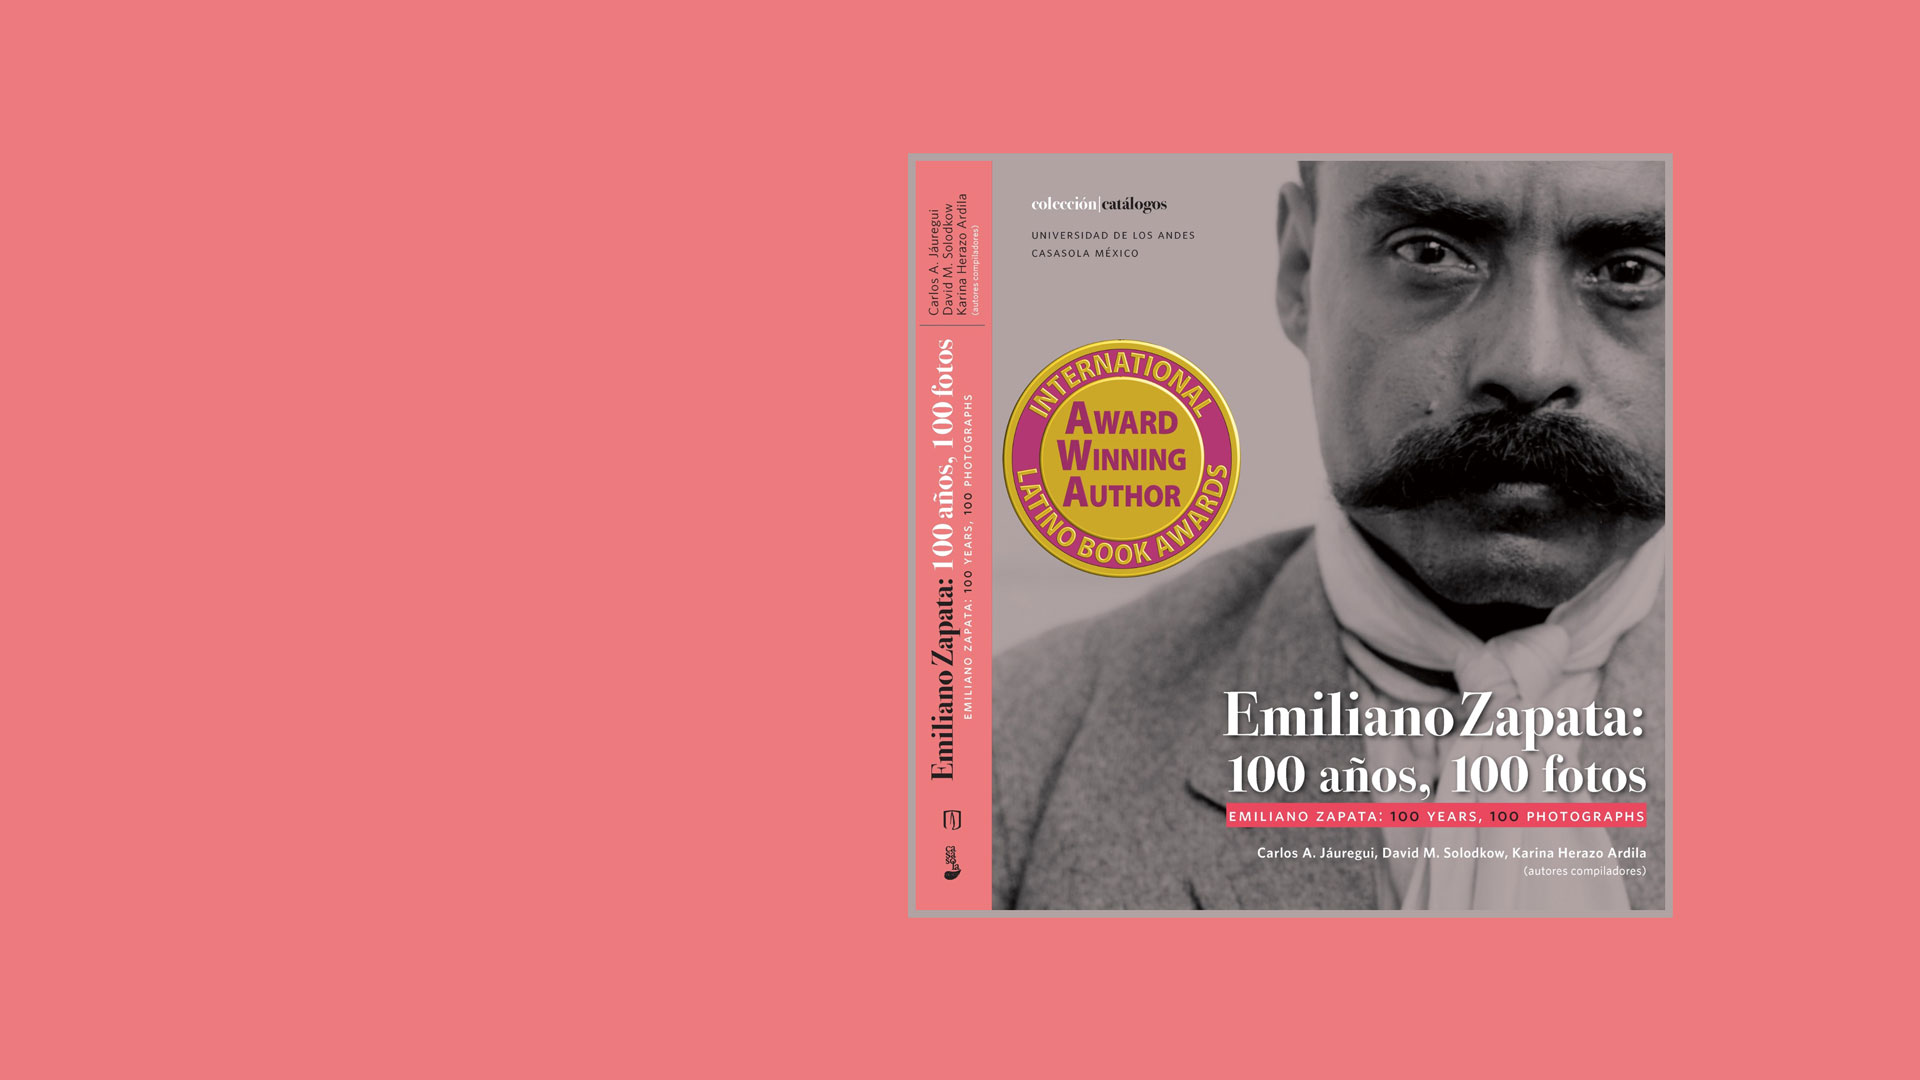 Emiliano Zapata: 100 años, 100 fotos gana premio Dolores Huerta en los International Latino Book Awards